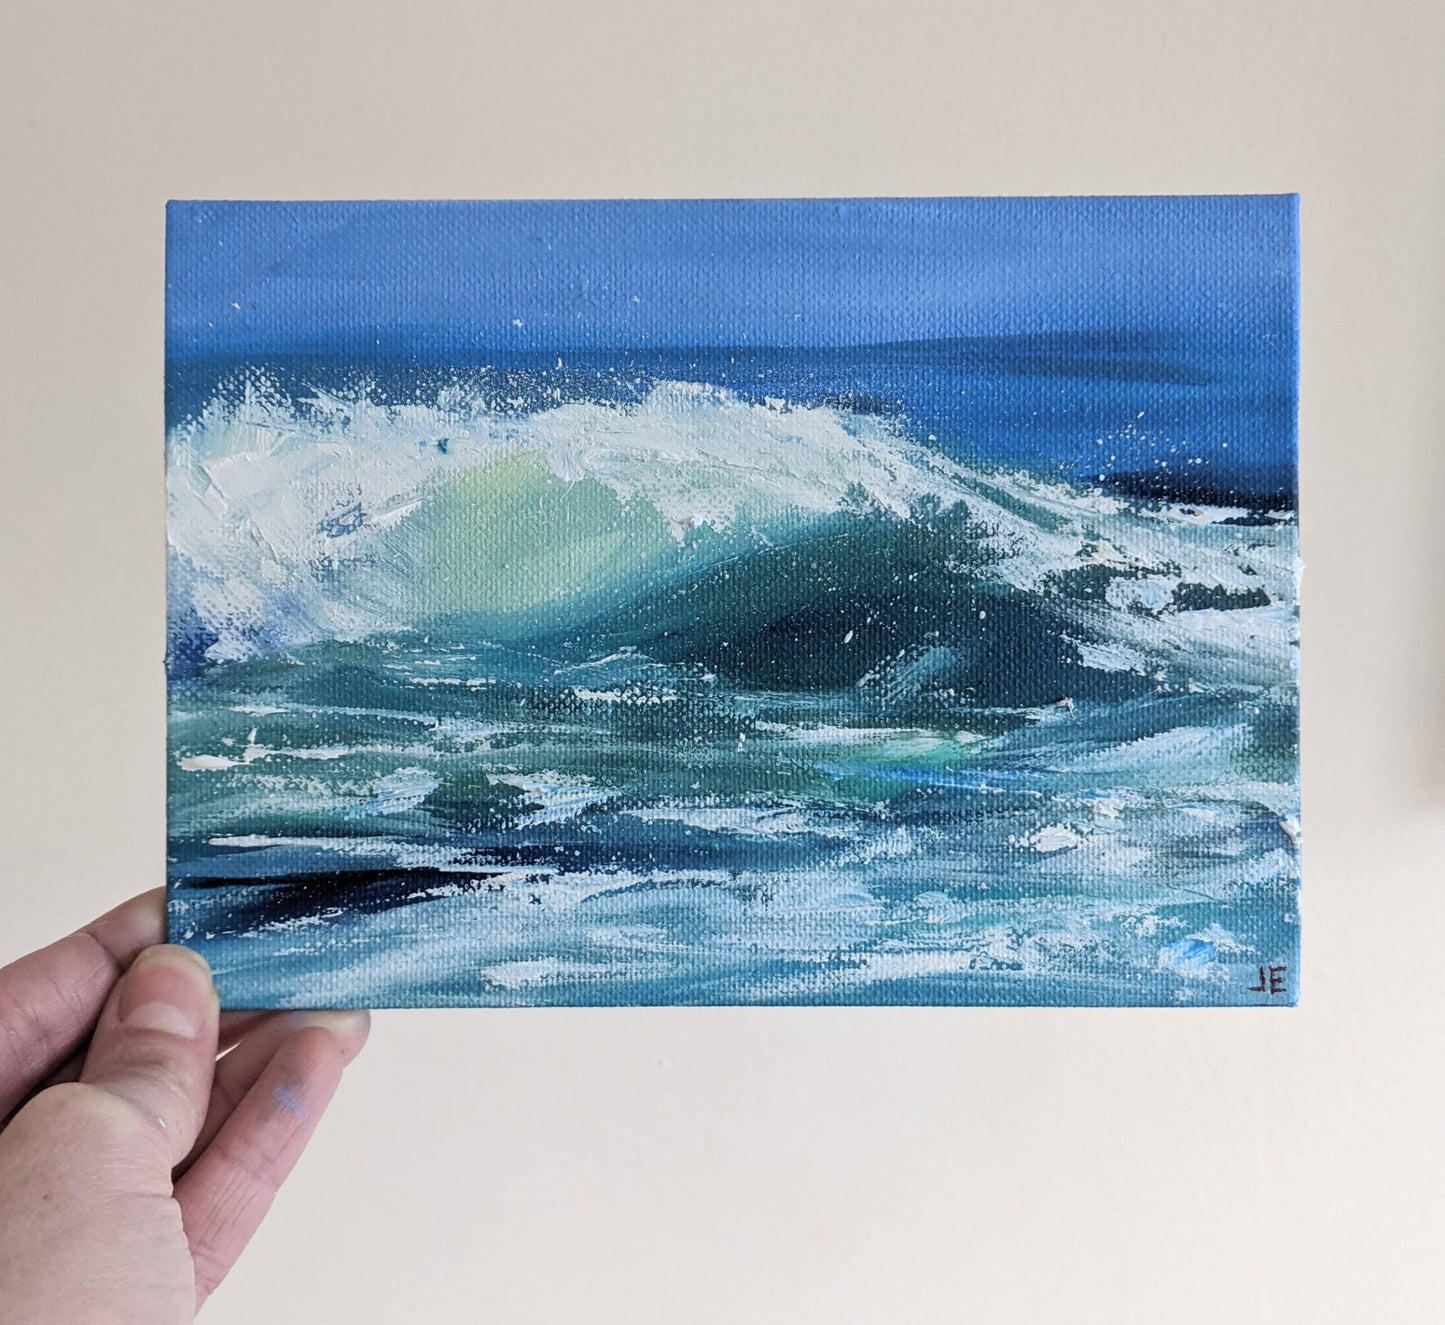 Miniature Wave Seascape #11 oil painting on canvas board in studio, by Jo Earl